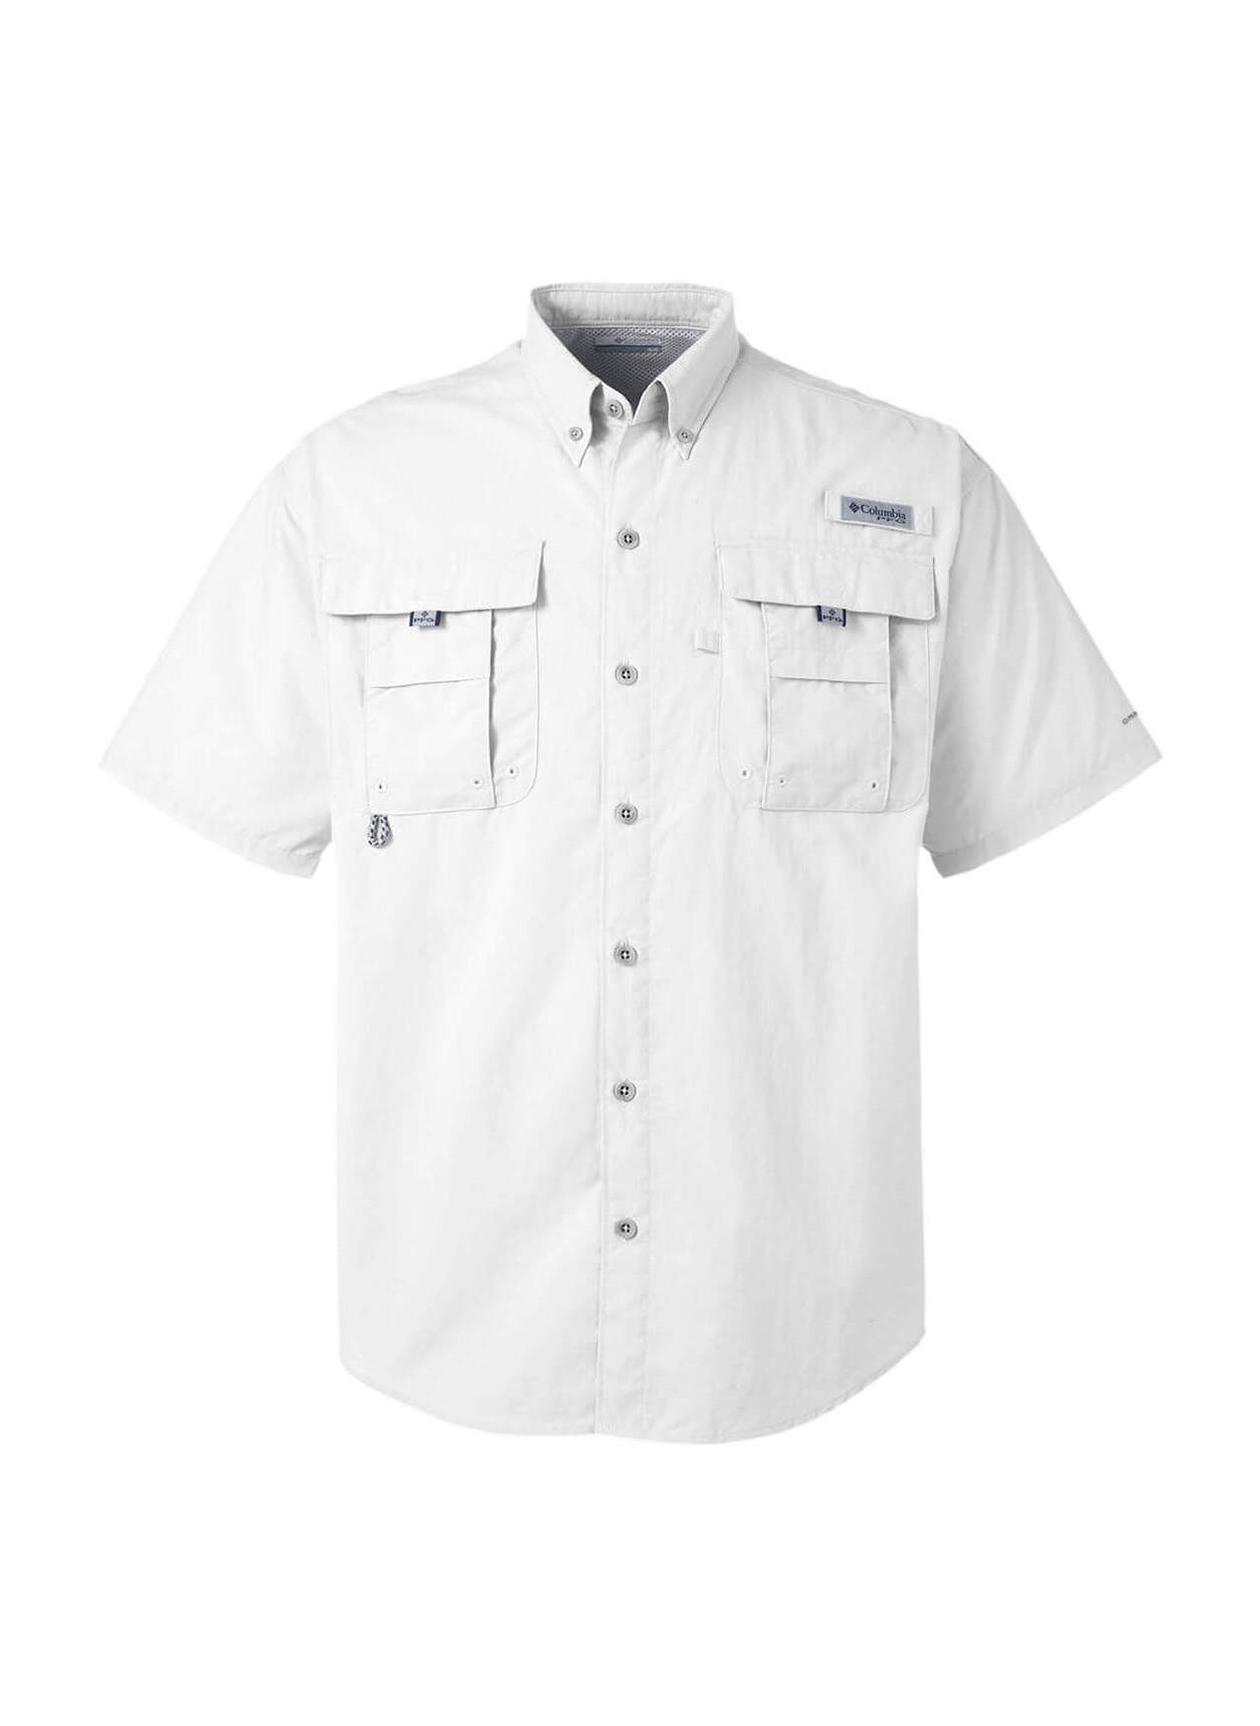 Columbia Men's White PFG Bahama II Short-Sleeve Shirt